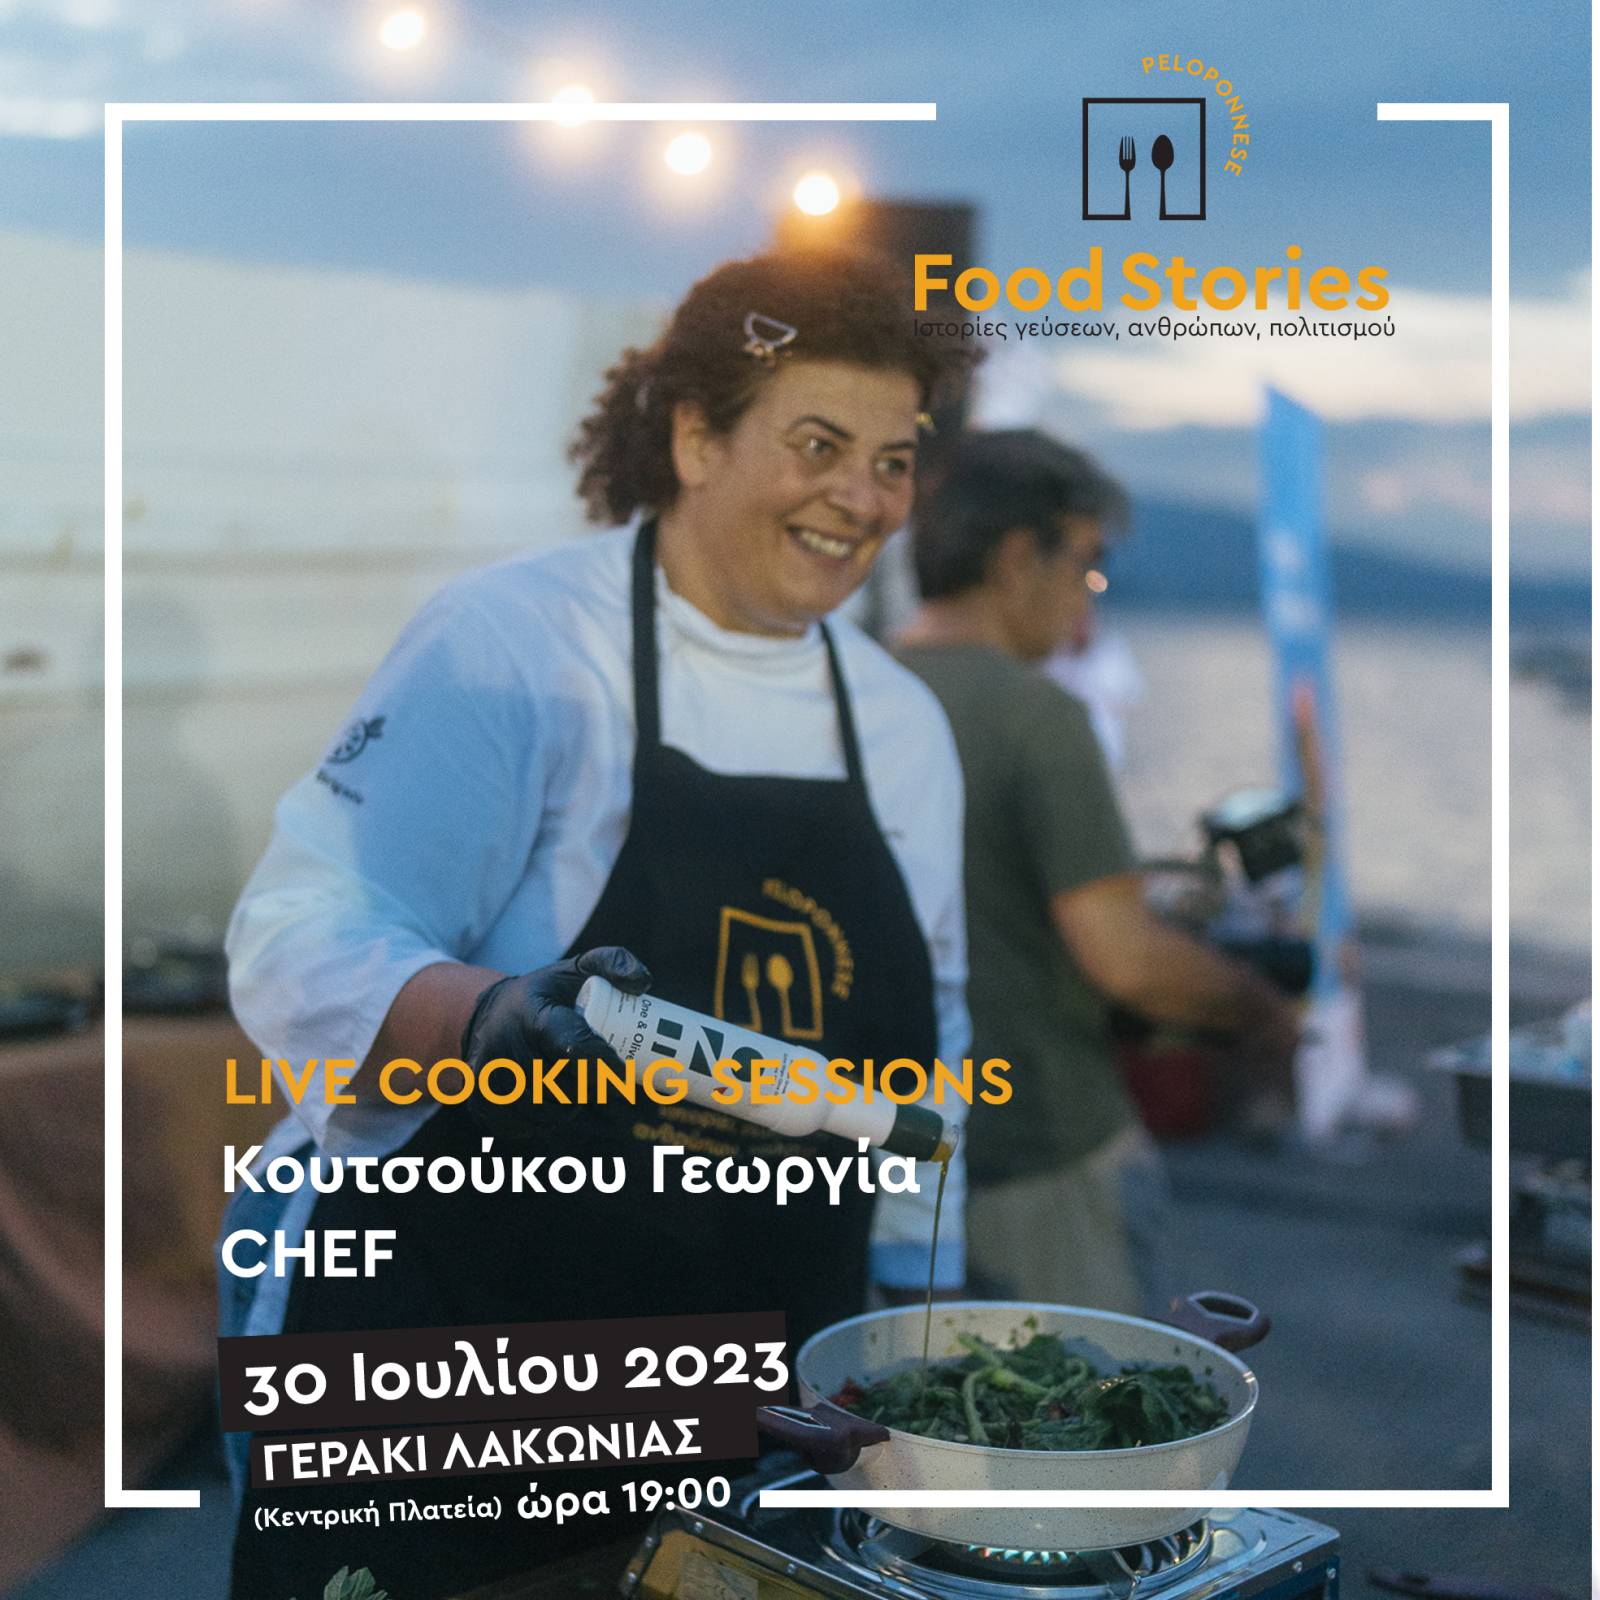 Συνεχίζεται μεθαύριο Κυριακή 30 Ιουλίου, στο Γεράκι, το 2ο Φεστιβάλ Γαστρονομίας Πελοποννήσου “Peloponnese Food Stories 2023 | Ιστορίες Γεύσεων, Ανθρώπων, Πολιτισμού”